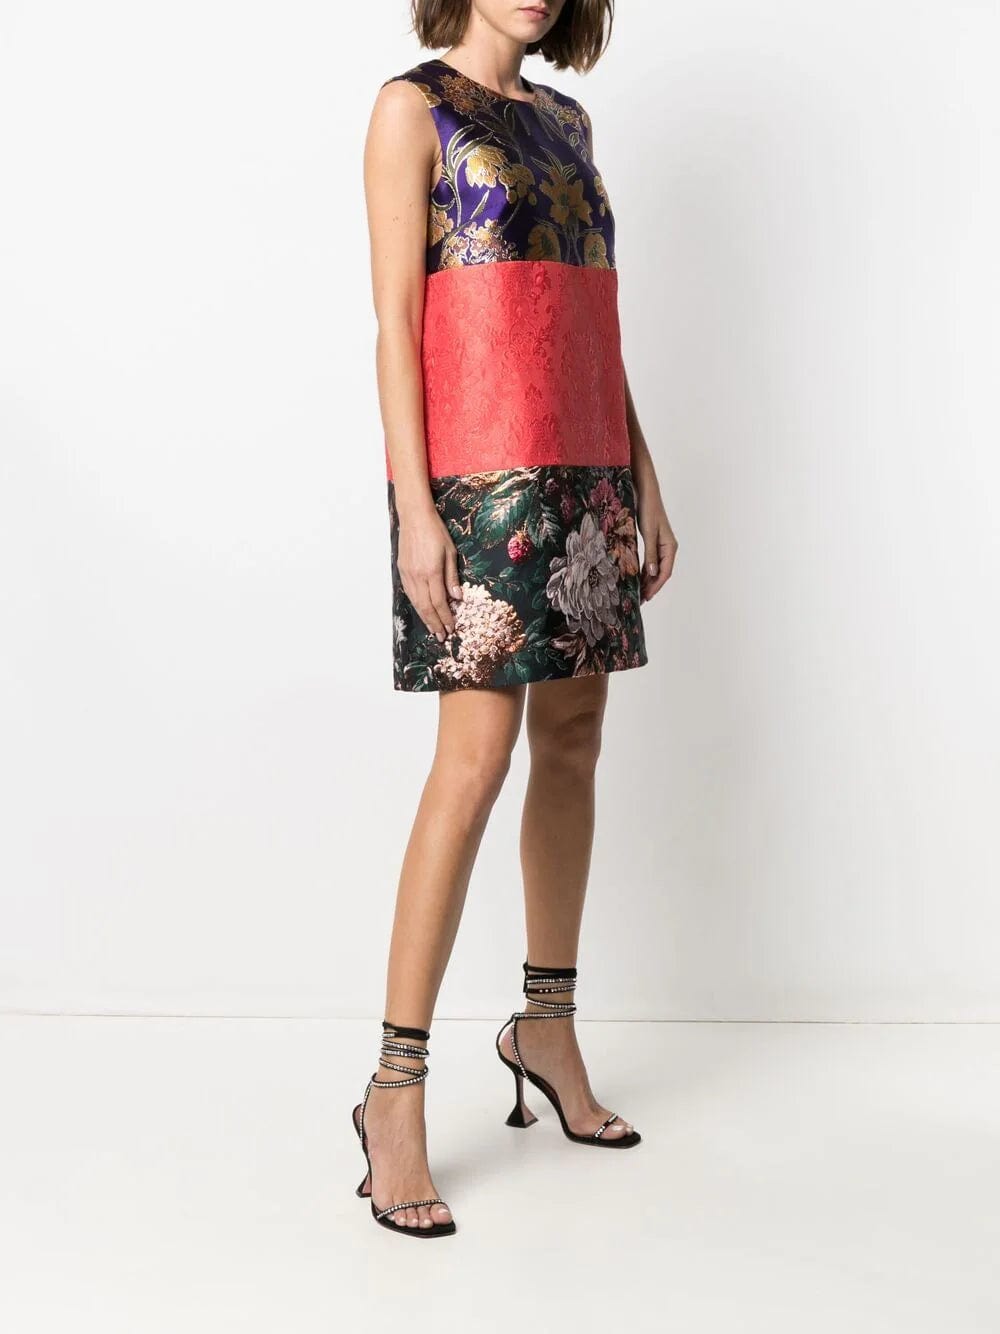 Dolce & Gabbana Jacquard-Woven Shift Dress